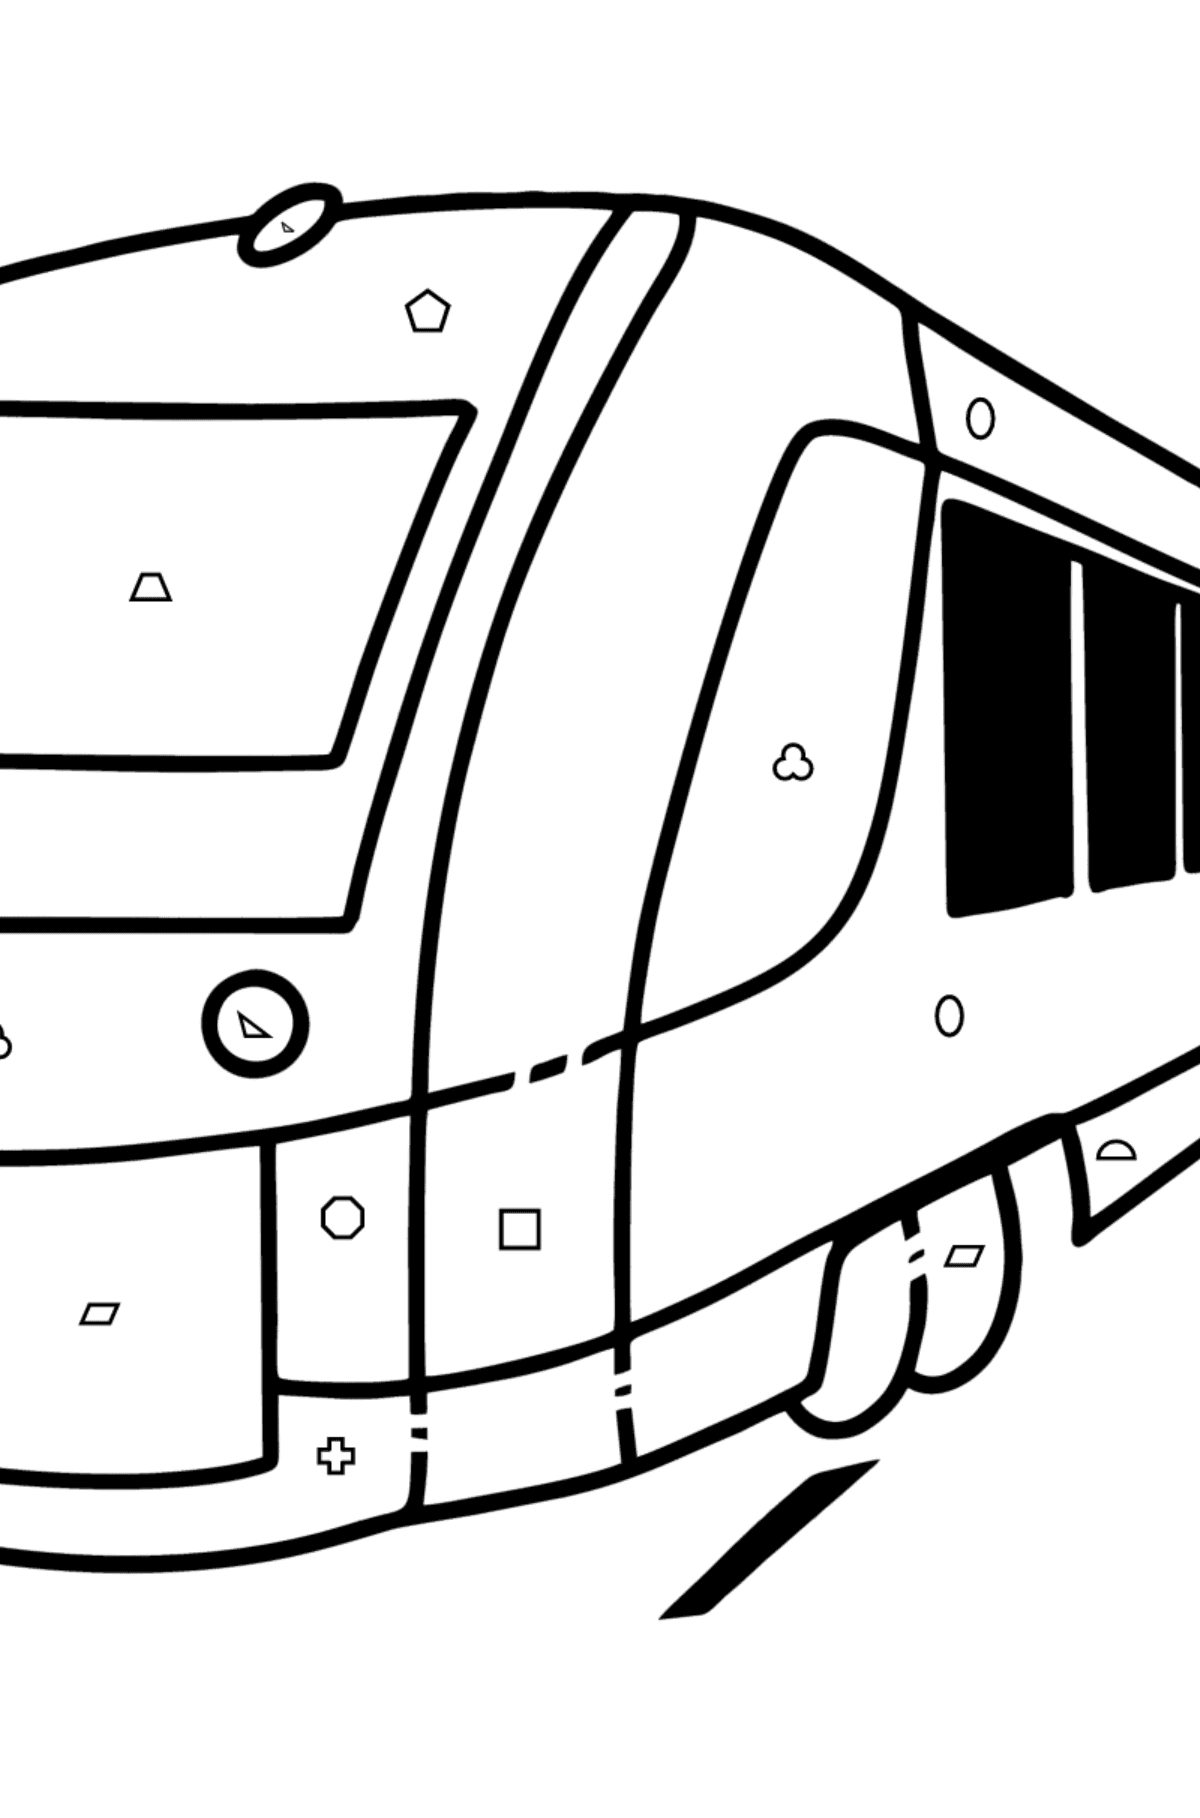 Coloriage - Train urbain - Coloriage par Formes Géométriques pour les Enfants